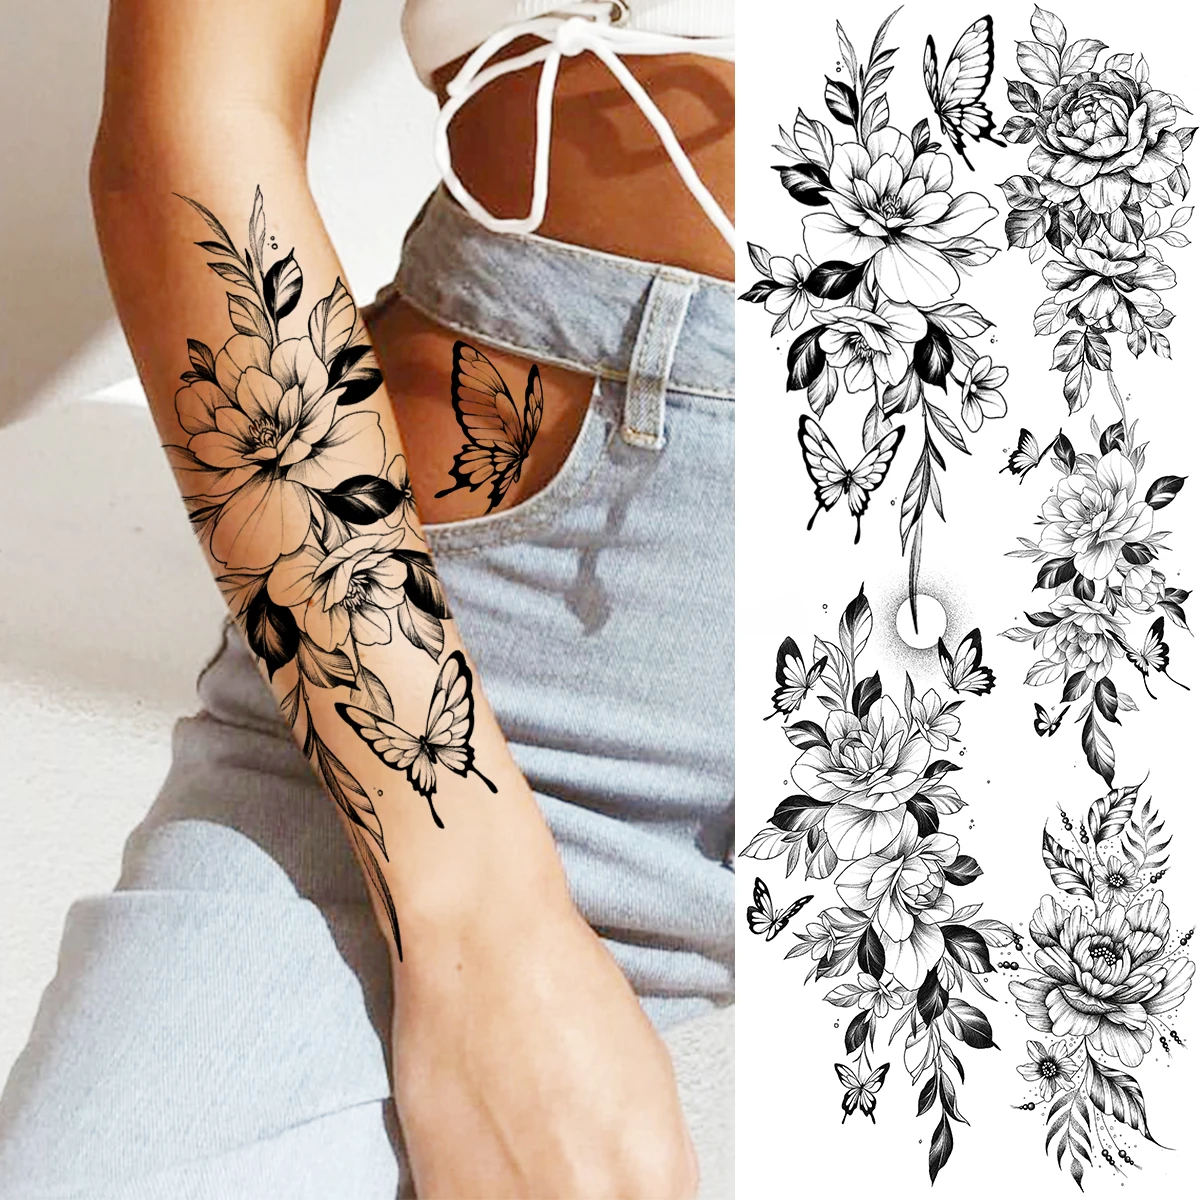 

Реалистичные временные татуировки с 3D рисунком пиона, цветов, бабочек для женщин и взрослых, Георгин роза, цветок, искусственная татуировка, моющиеся татуировки с полурукавами